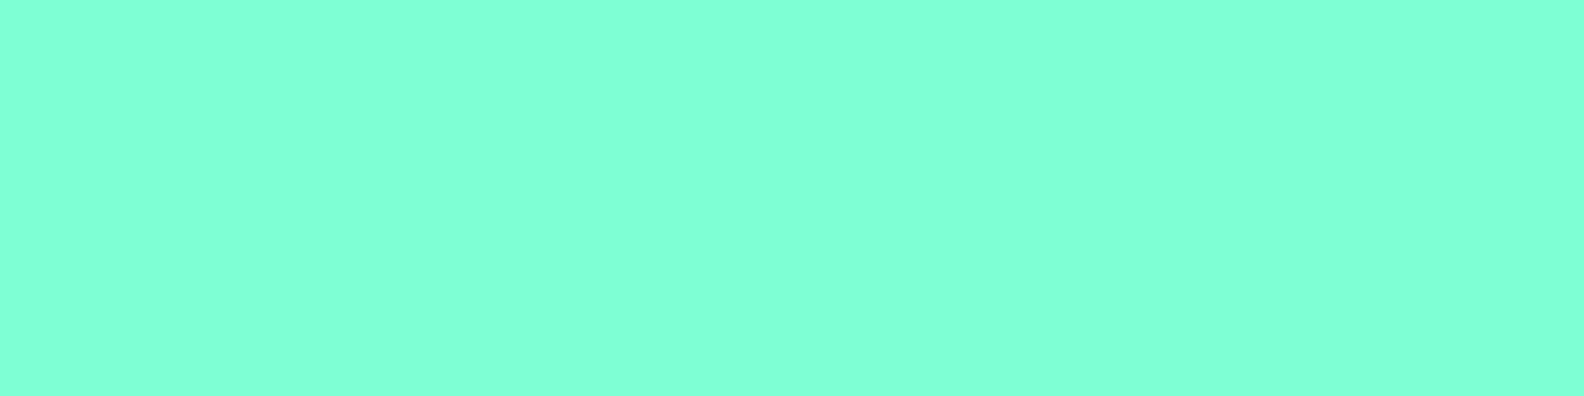 1584x396 Aquamarine Solid Color Background